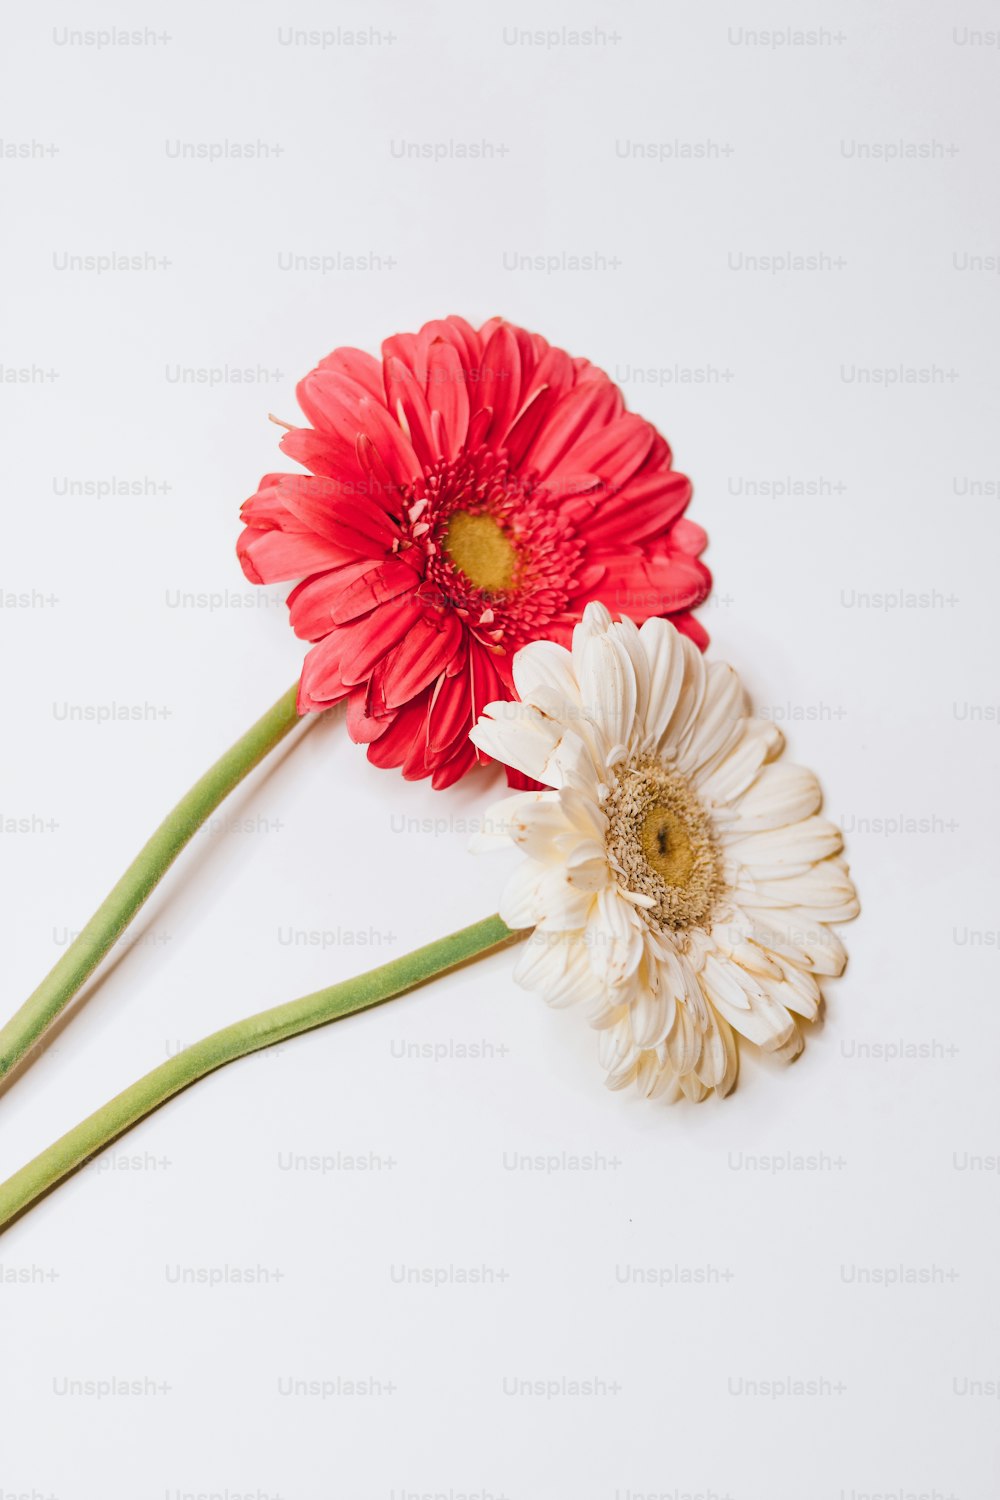 deux fleurs rouges et blanches sur une surface blanche